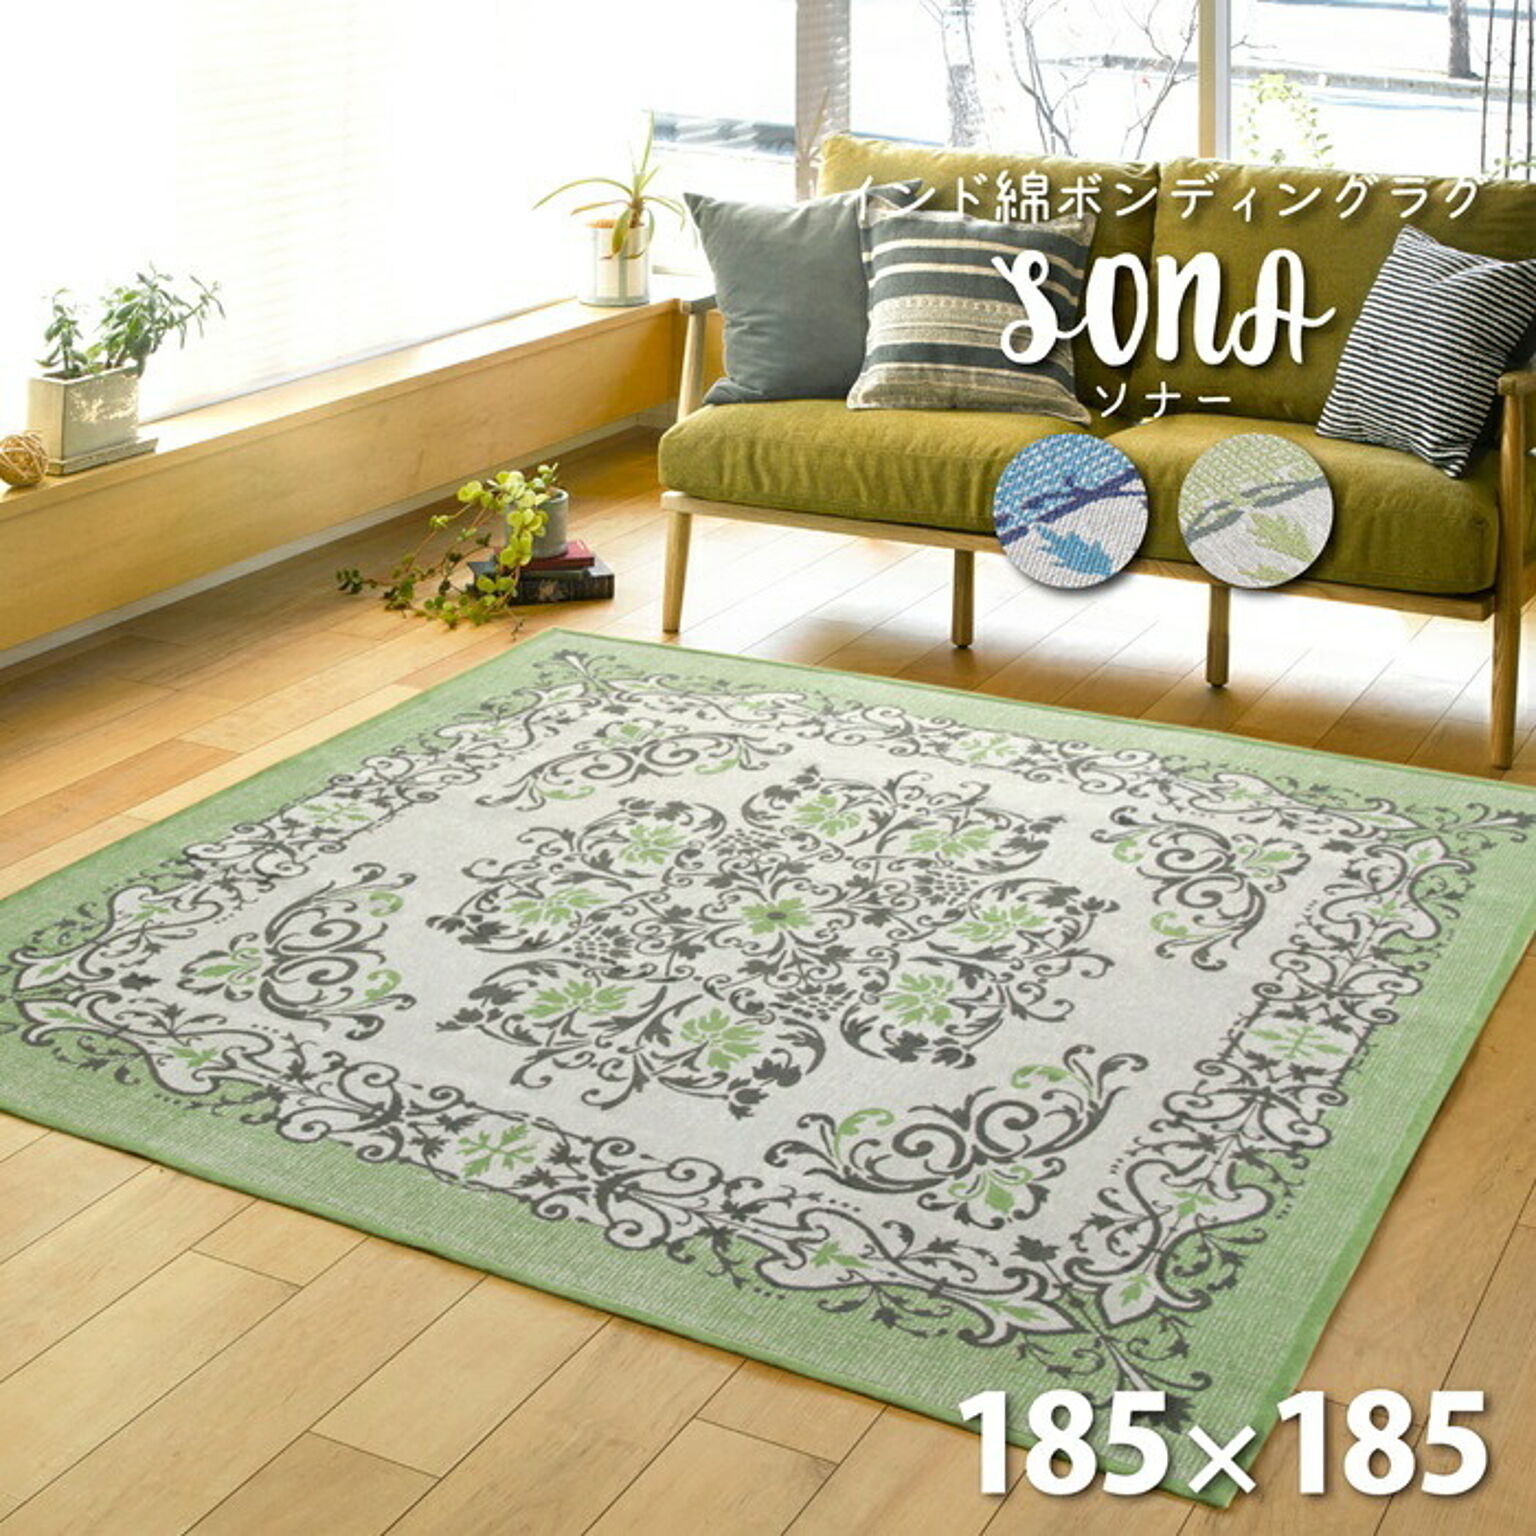 爽やかで品のあるお部屋作りに最適なインド綿ラグ ソナー 185×185 グリーン